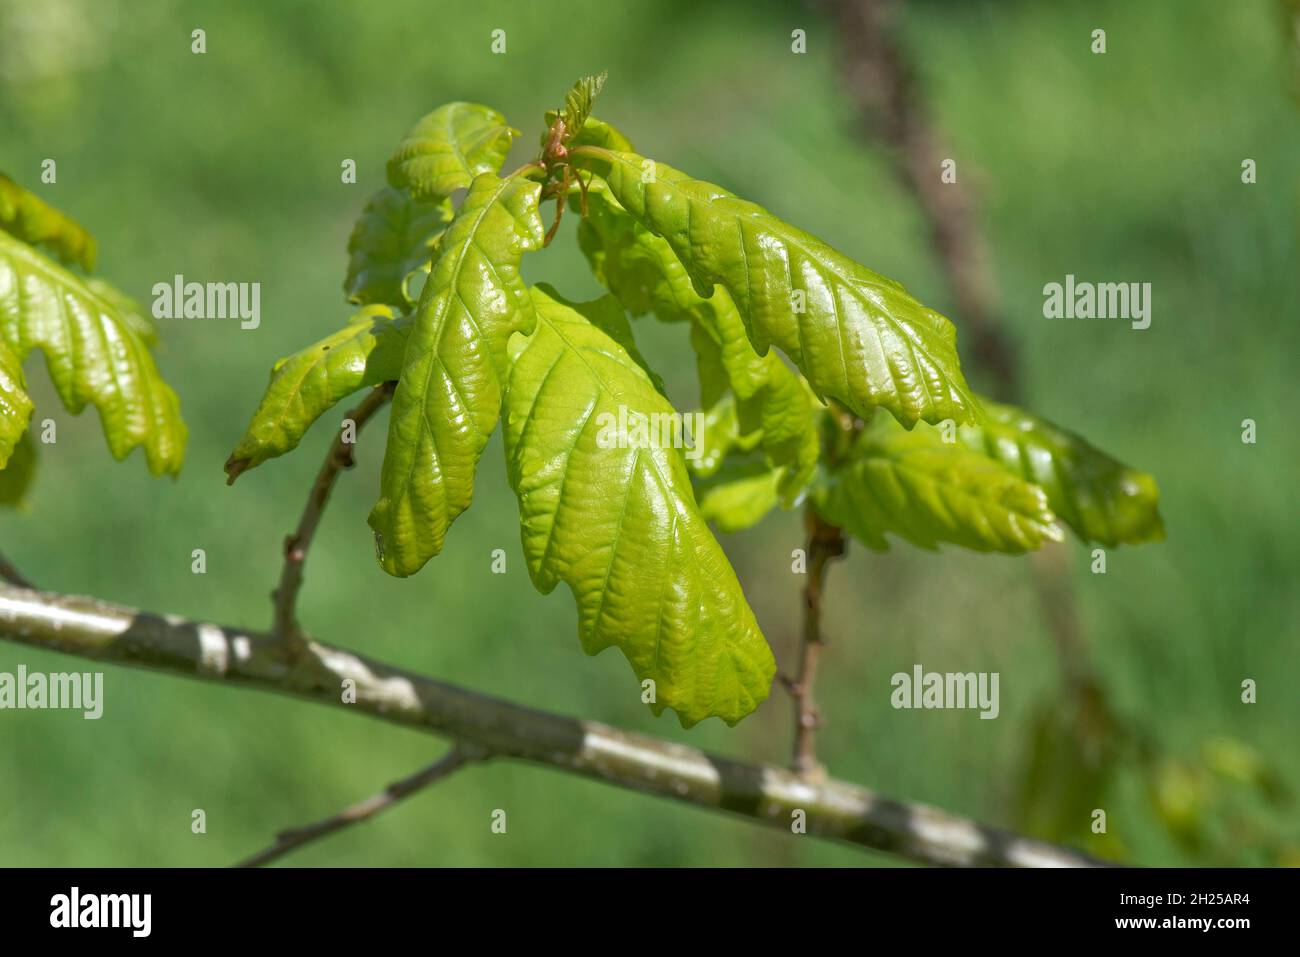 Chêne anglais (Quercus robur) feuilles vertes tendres, délicates en développement, en expansion et en expansion au printemps, Berkshire, mai Banque D'Images